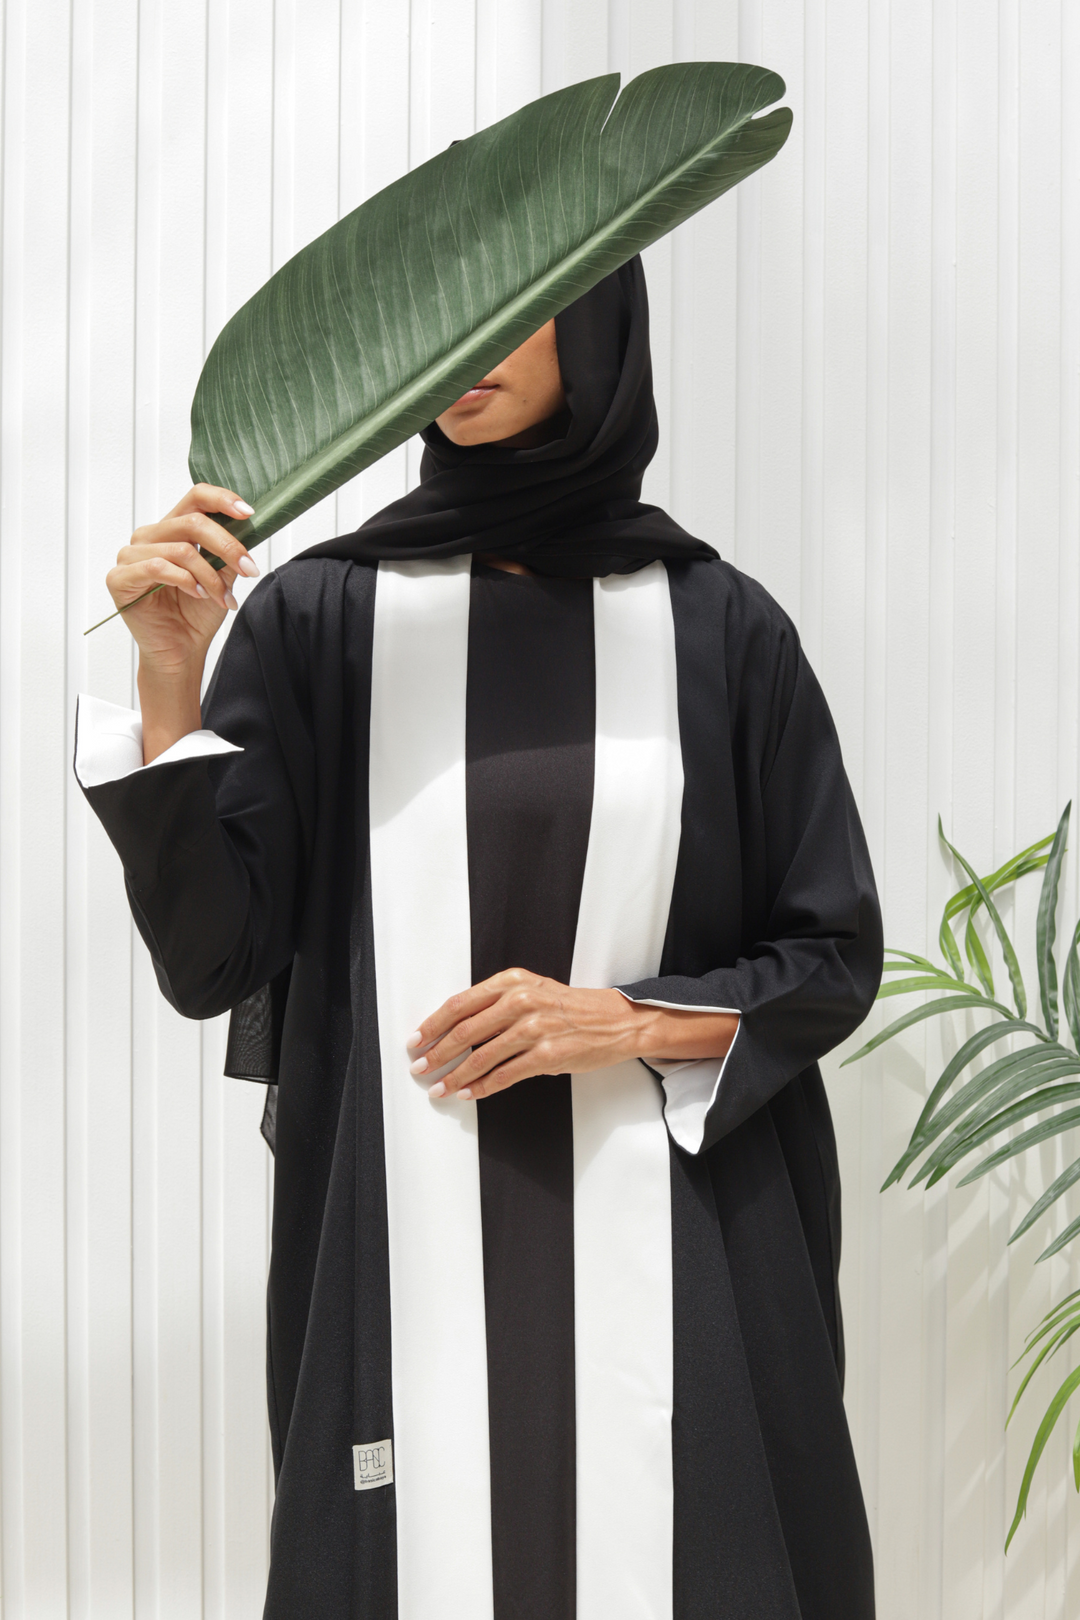 Basic Panel (Black & White Abaya) - BasicAbaya